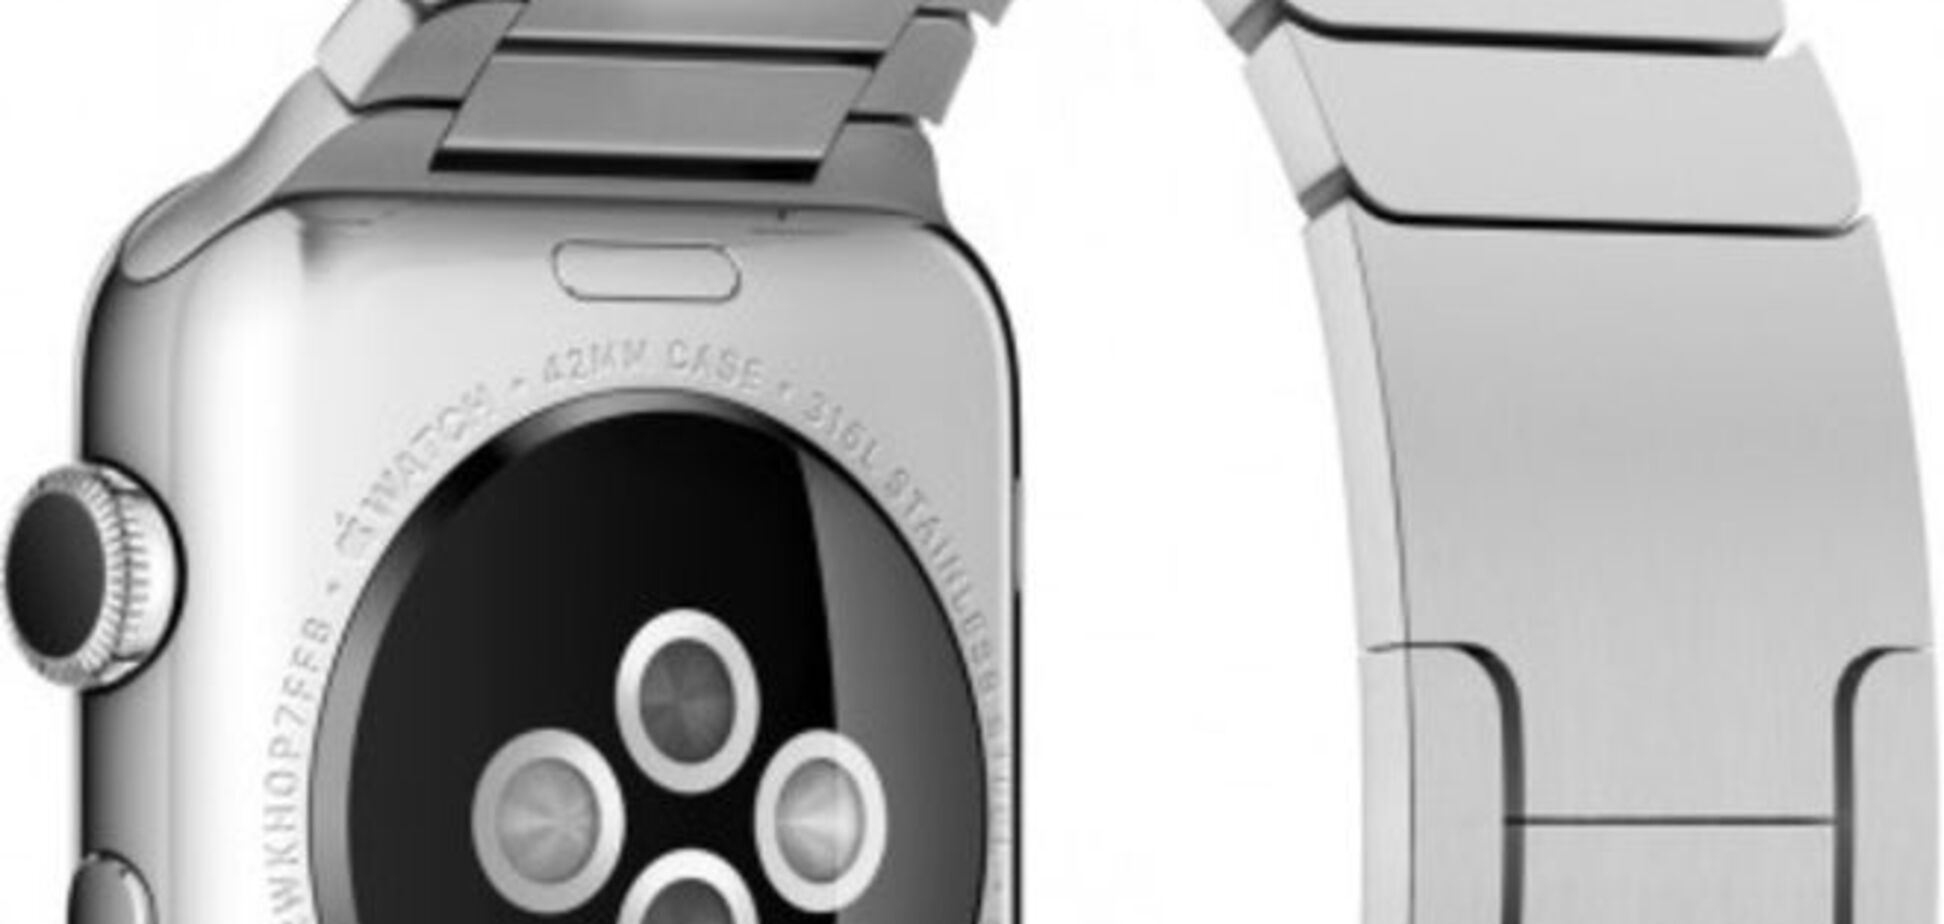 Представлены новые детальные фото 'умных' часов Apple Watch